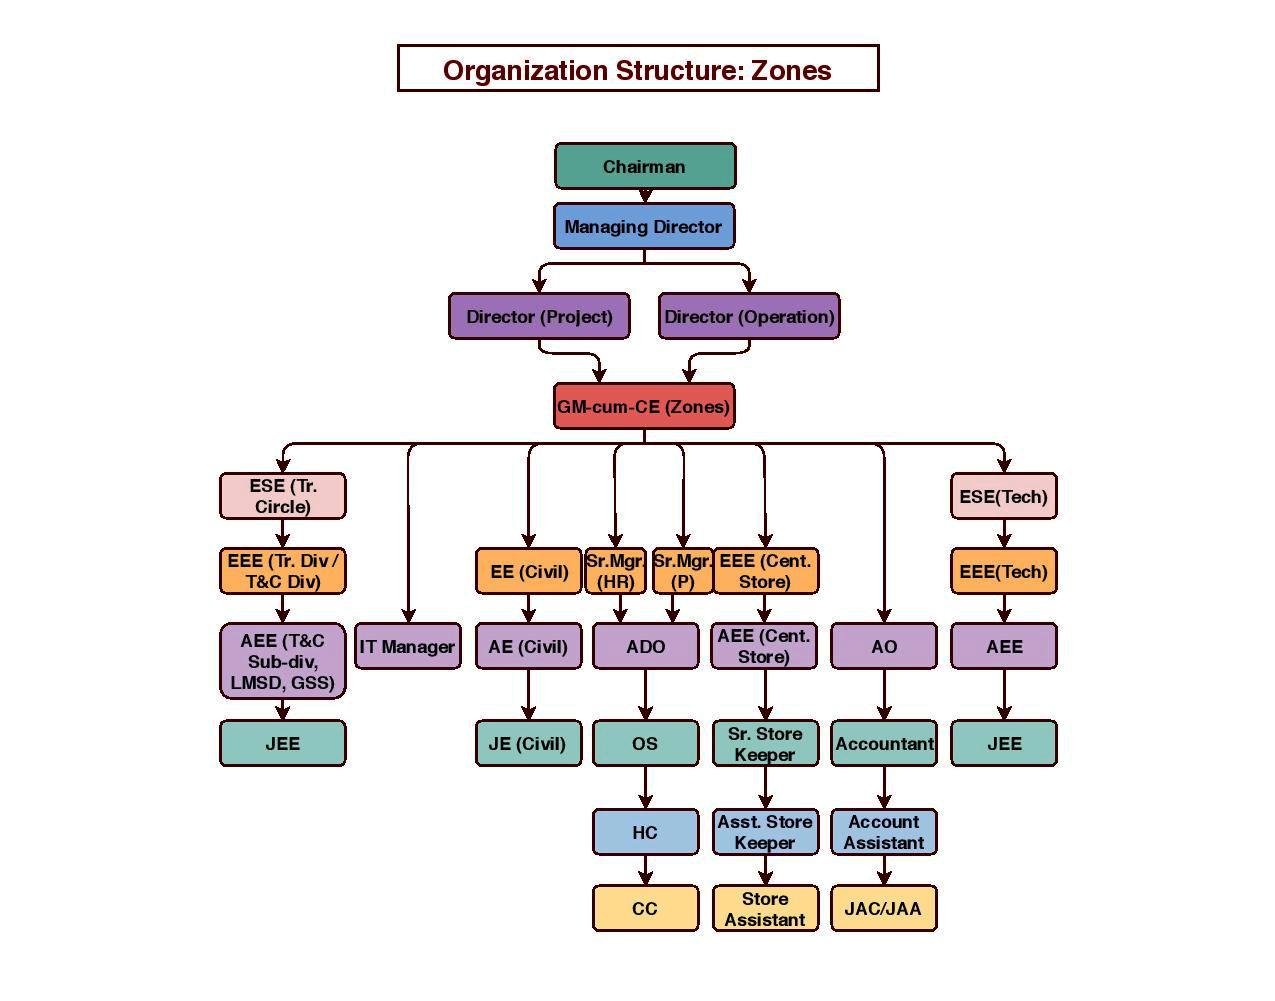 Organization Structure: Zones